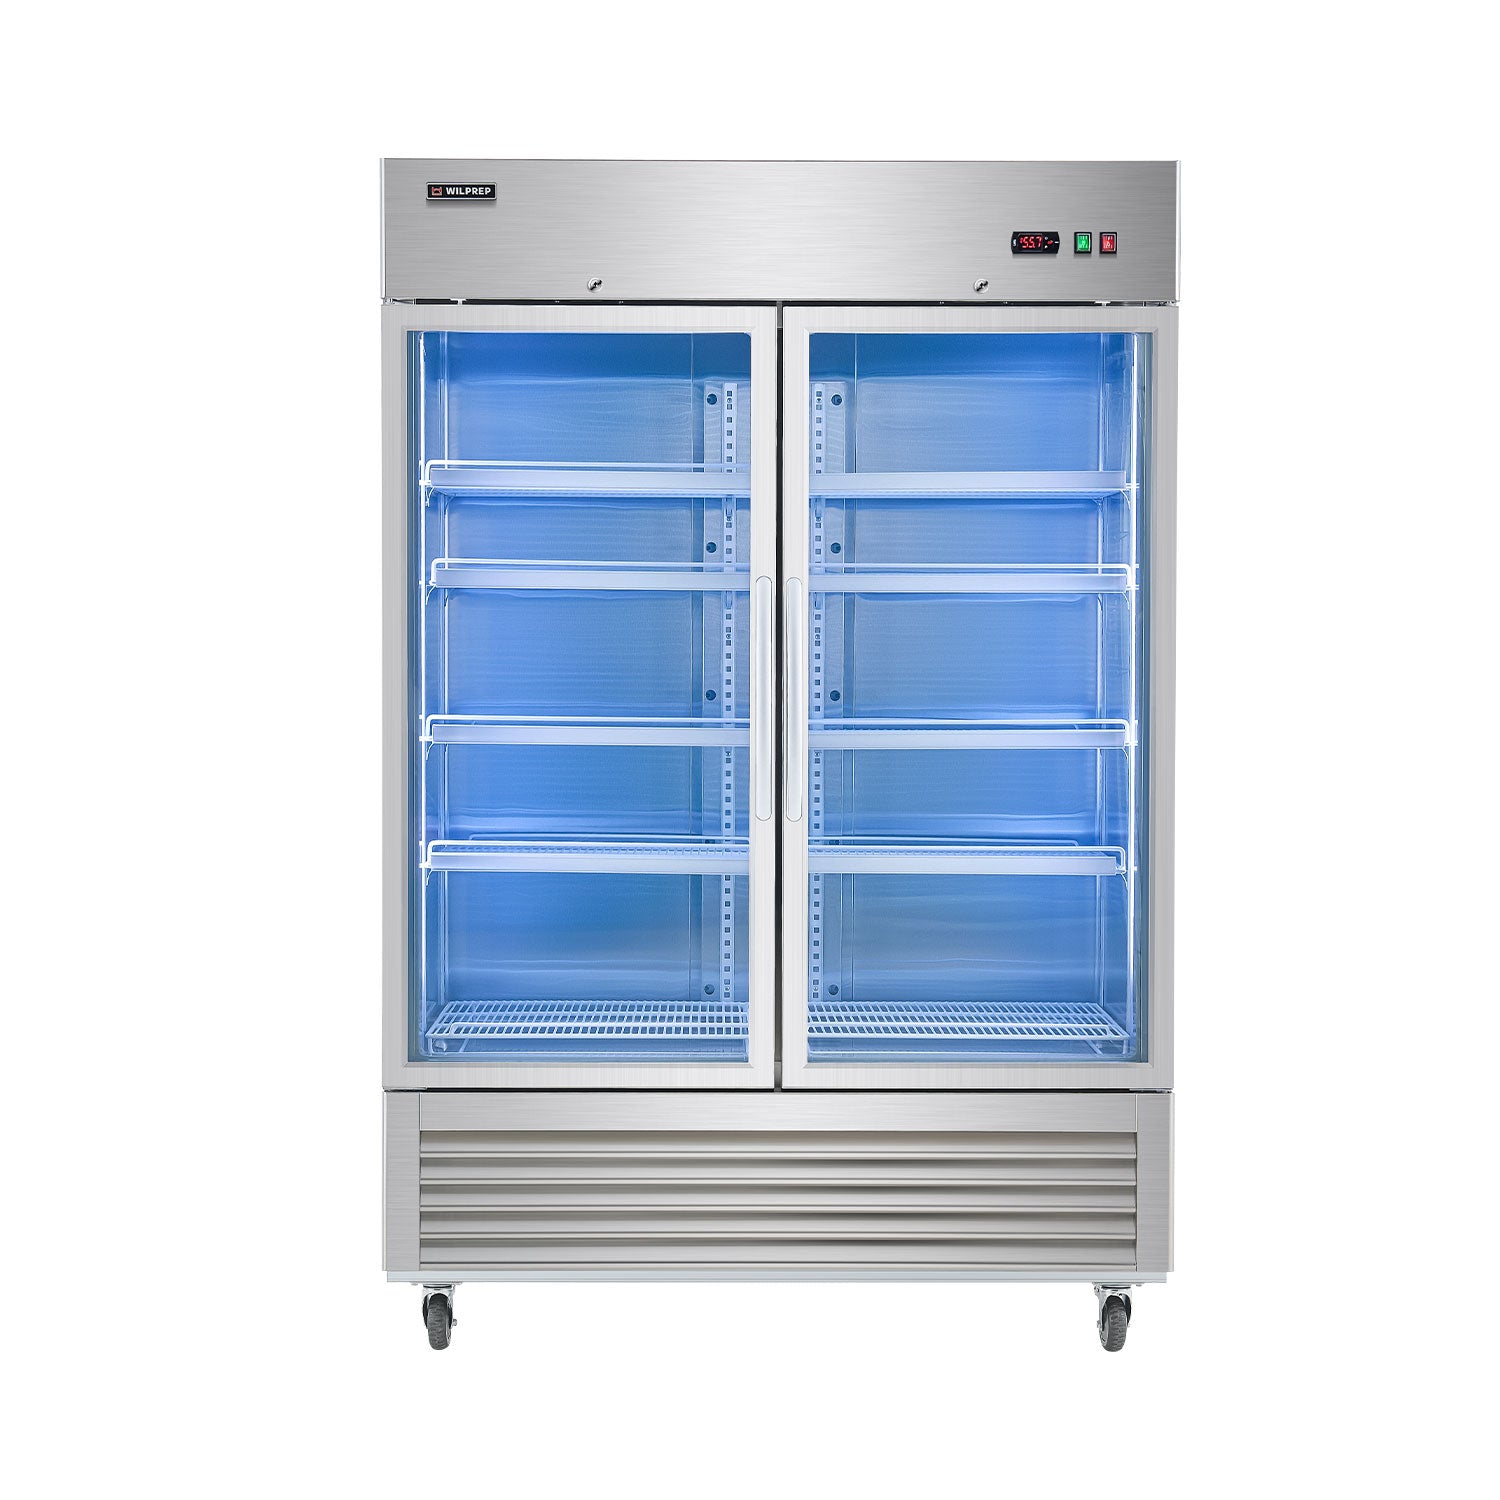 54.1" Commercial Merchandiser Refrigerator Two Glass Door  42.2 cu. ft. Capacity